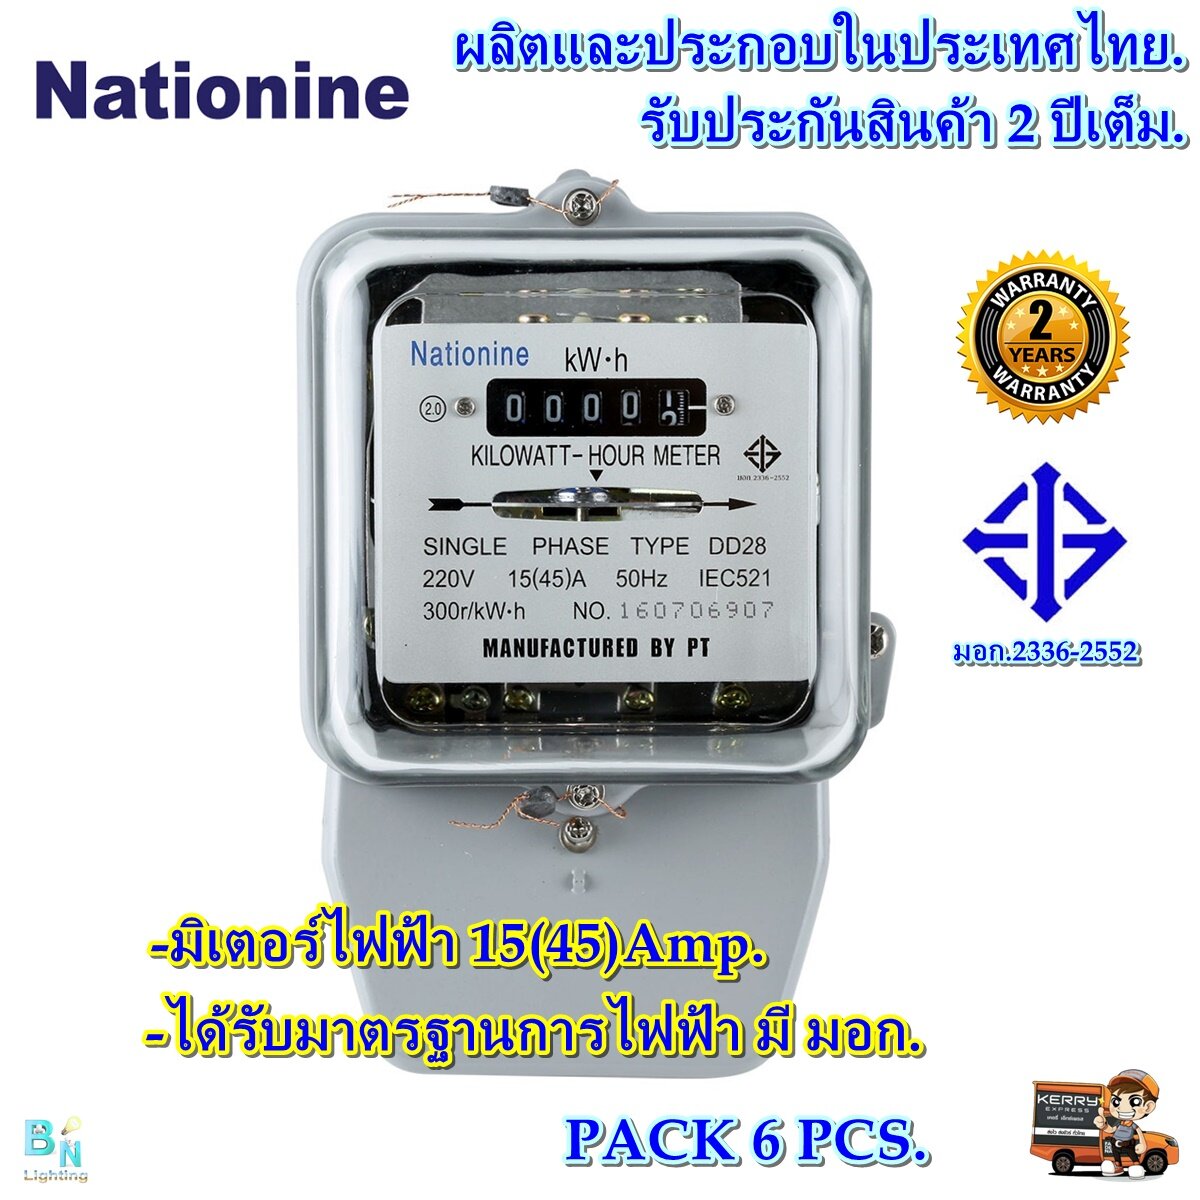 มิเตอร์ไฟฟ้า มิเตอร์วัดไฟ หม้อไฟ มิเตอร์ไฟ 2 เฟส 15A(45)A Nationine ของแท้ มีมอก.ผ่านมาตรฐานการไฟฟ้า มีหนังสือรับรองจากการไฟฟ้า.ทดลองก่อนส่งทุกตัว (แพ็ก 6 ตัว)